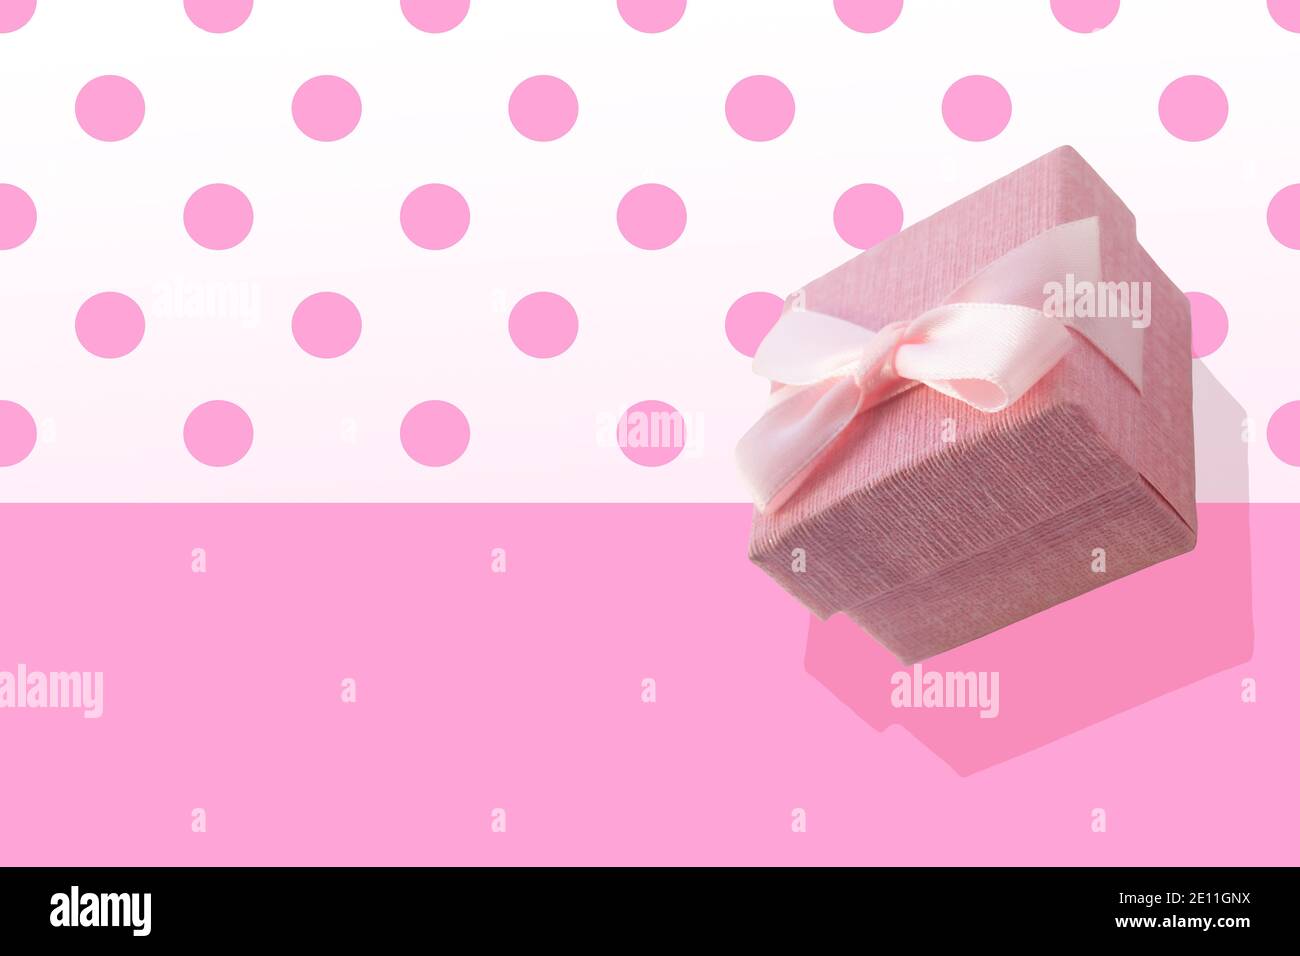 Hộp Quà Hồng (Pink Gift Box): Mang trong mình sự nhẹ nhàng, dịu dàng của màu hồng, hộp quà là lựa chọn hoàn hảo để đựng bất kỳ món quà nào mà bạn muốn gửi tặng người thân, bạn bè. Hộp quà sẽ làm cho món quà của bạn thể hiện được tình cảm chân thành nhất.